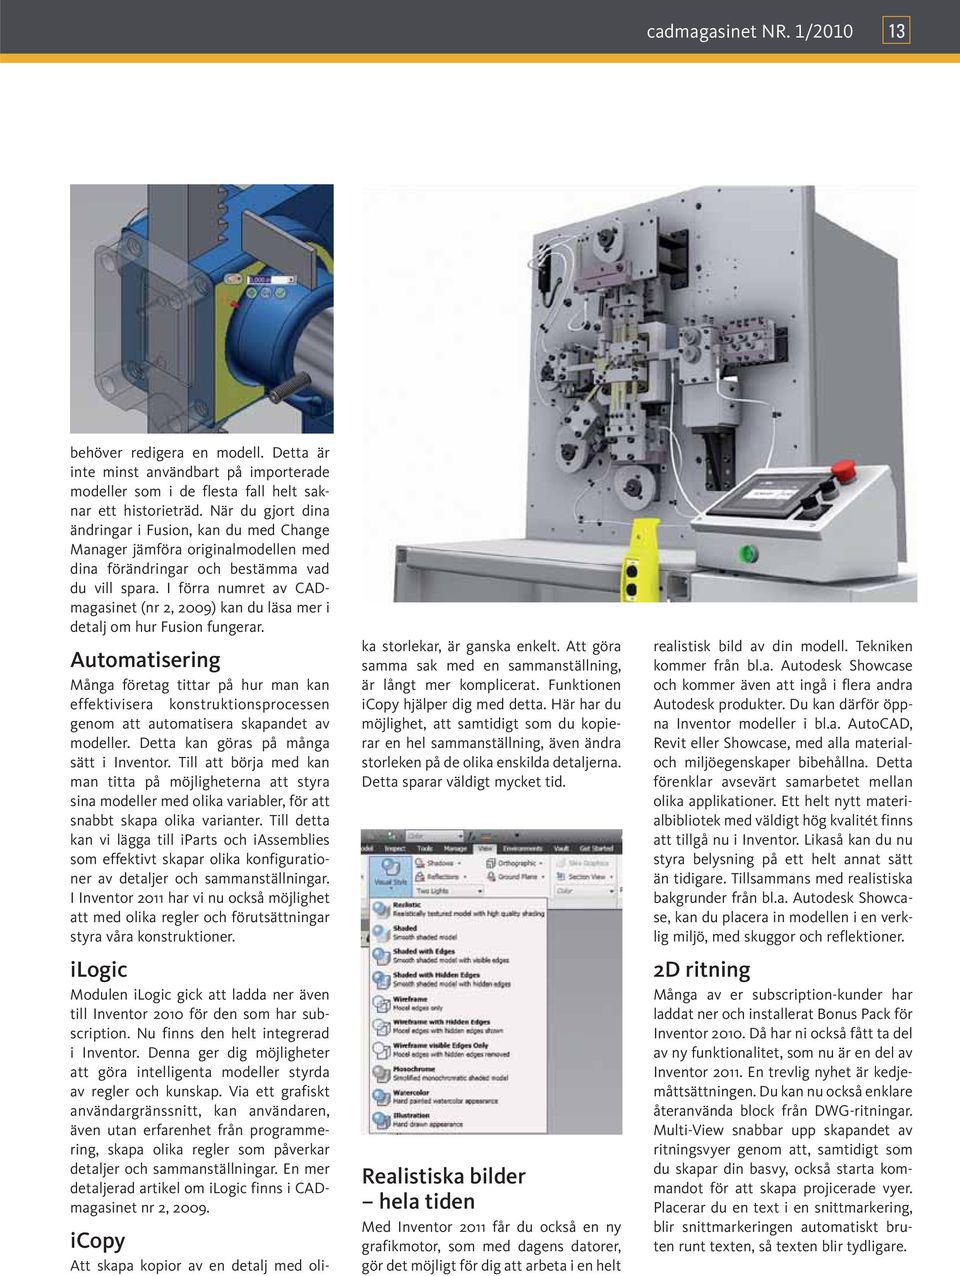 I förra numret av CADmagasinet (nr 2, 2009) kan du läsa mer i detalj om hur Fusion fungerar.